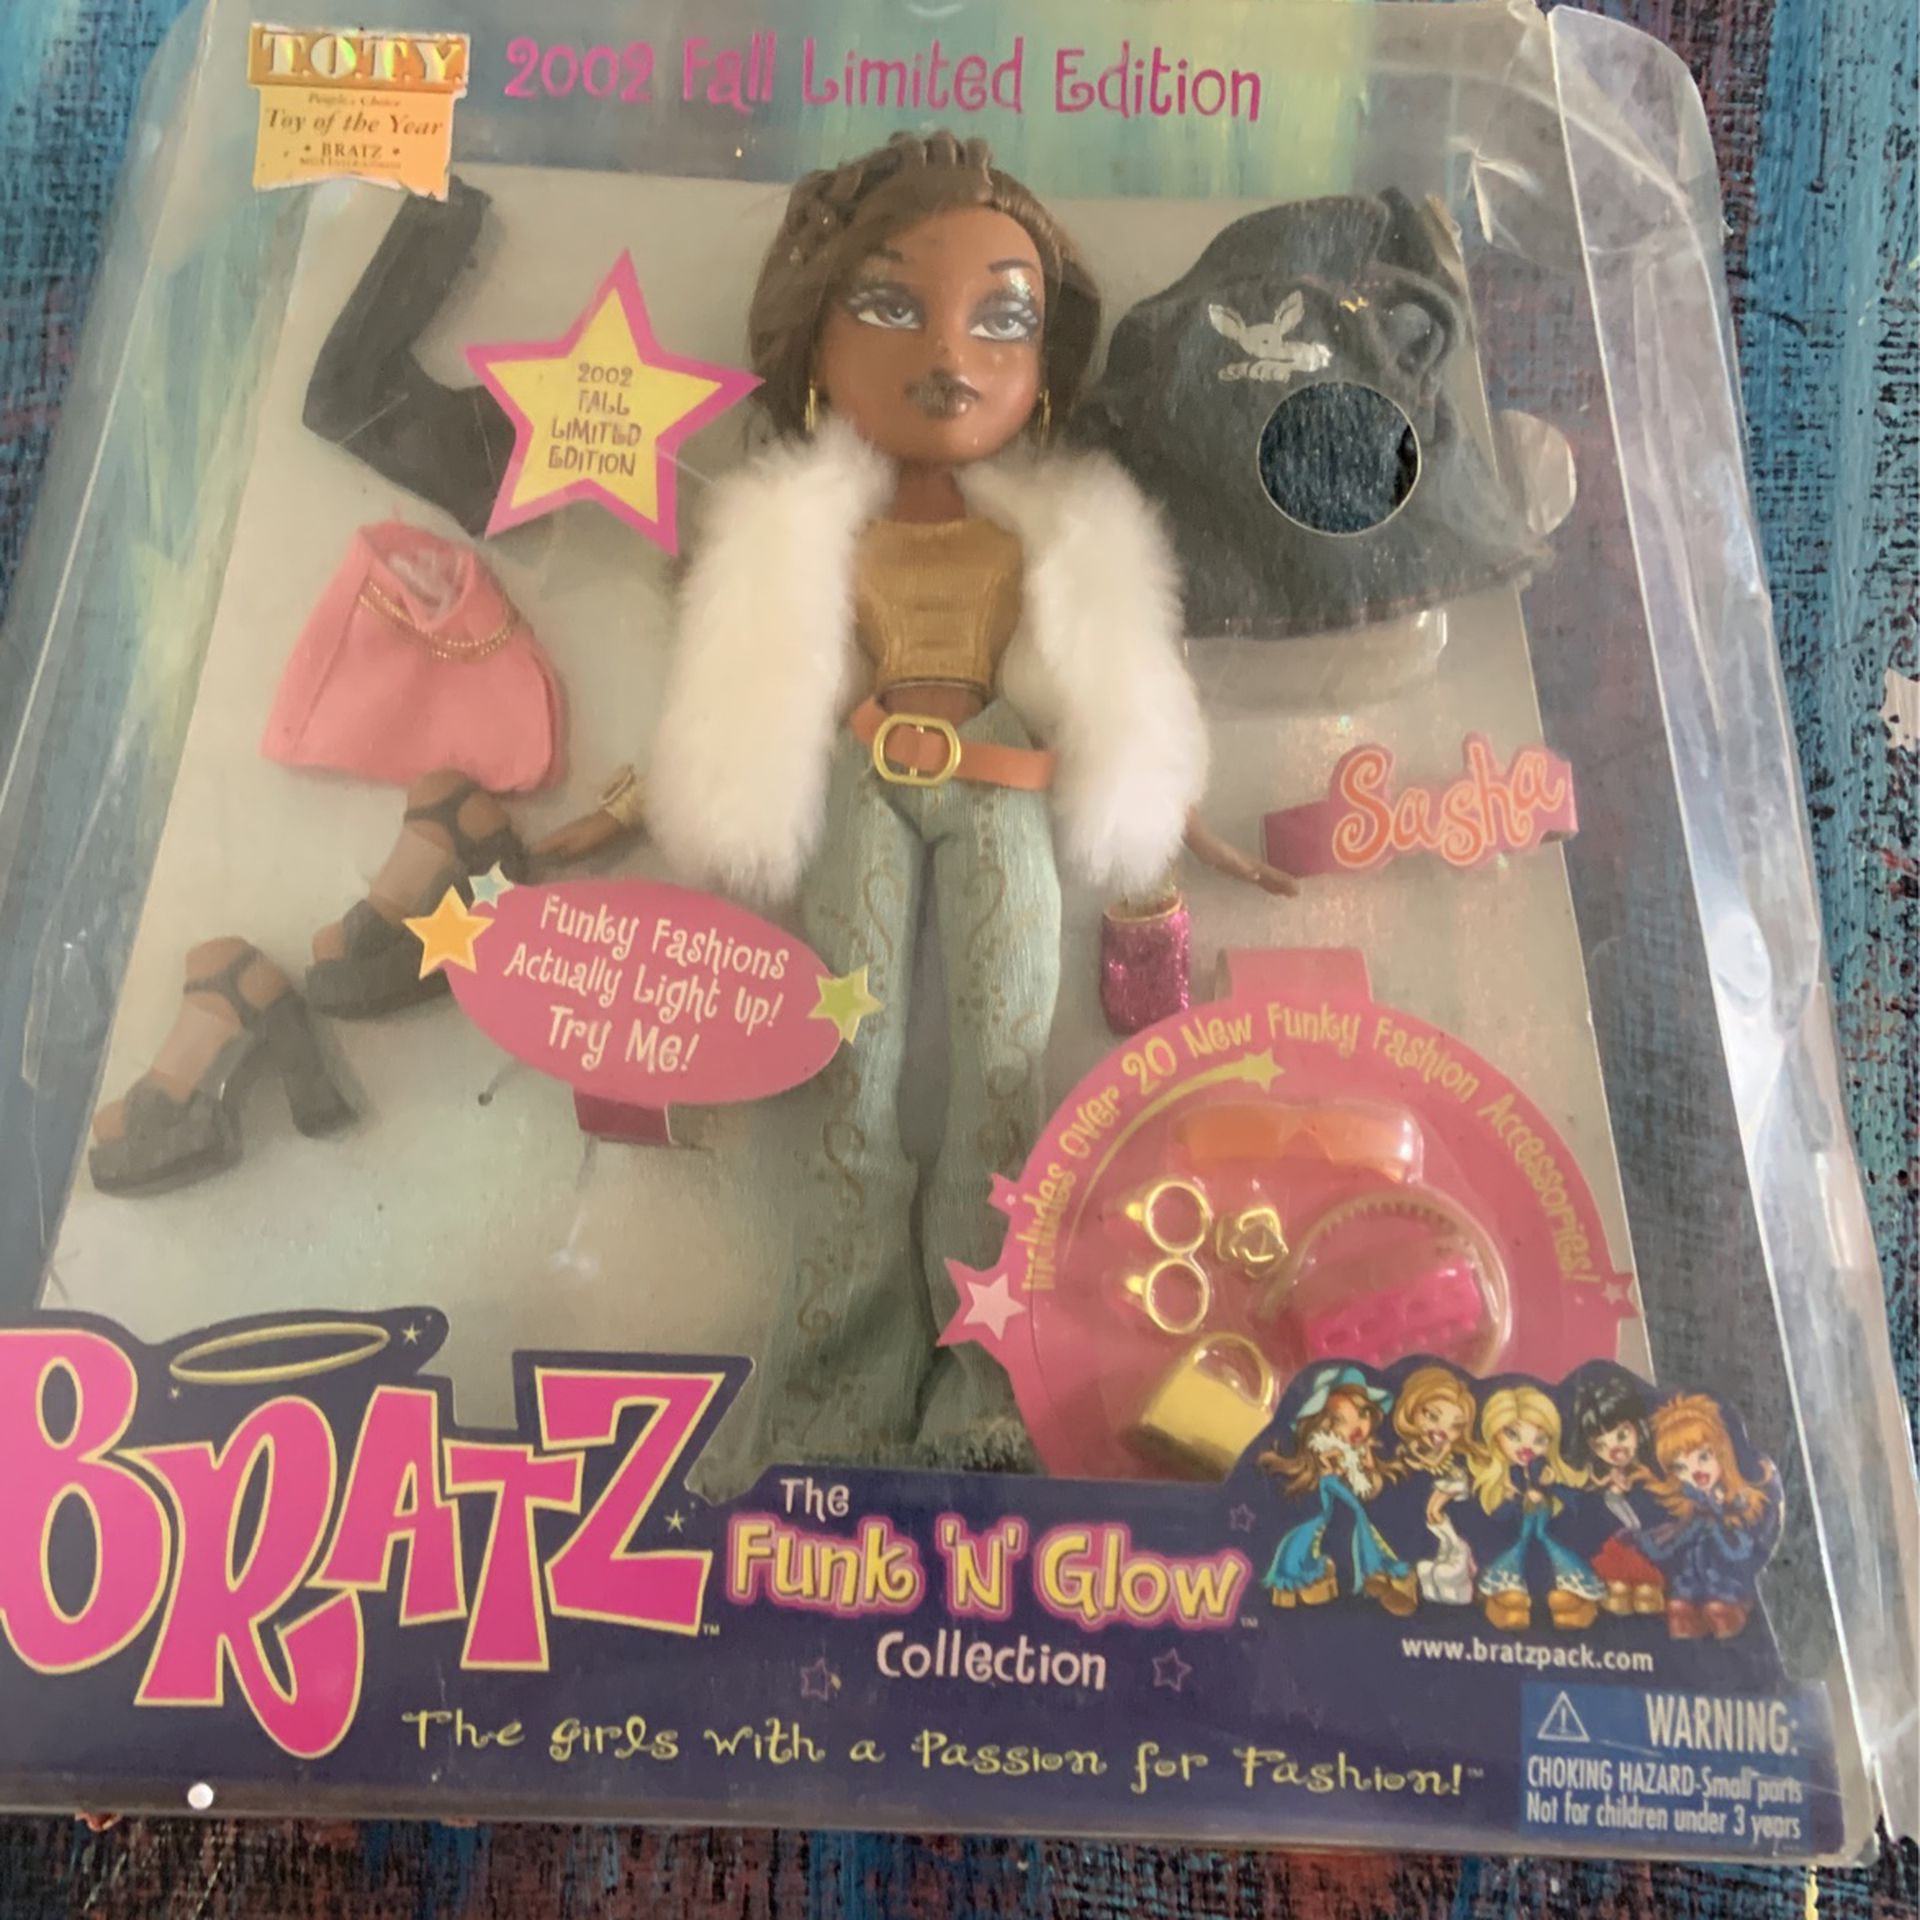 2002 Limited Edition Bratz Doll